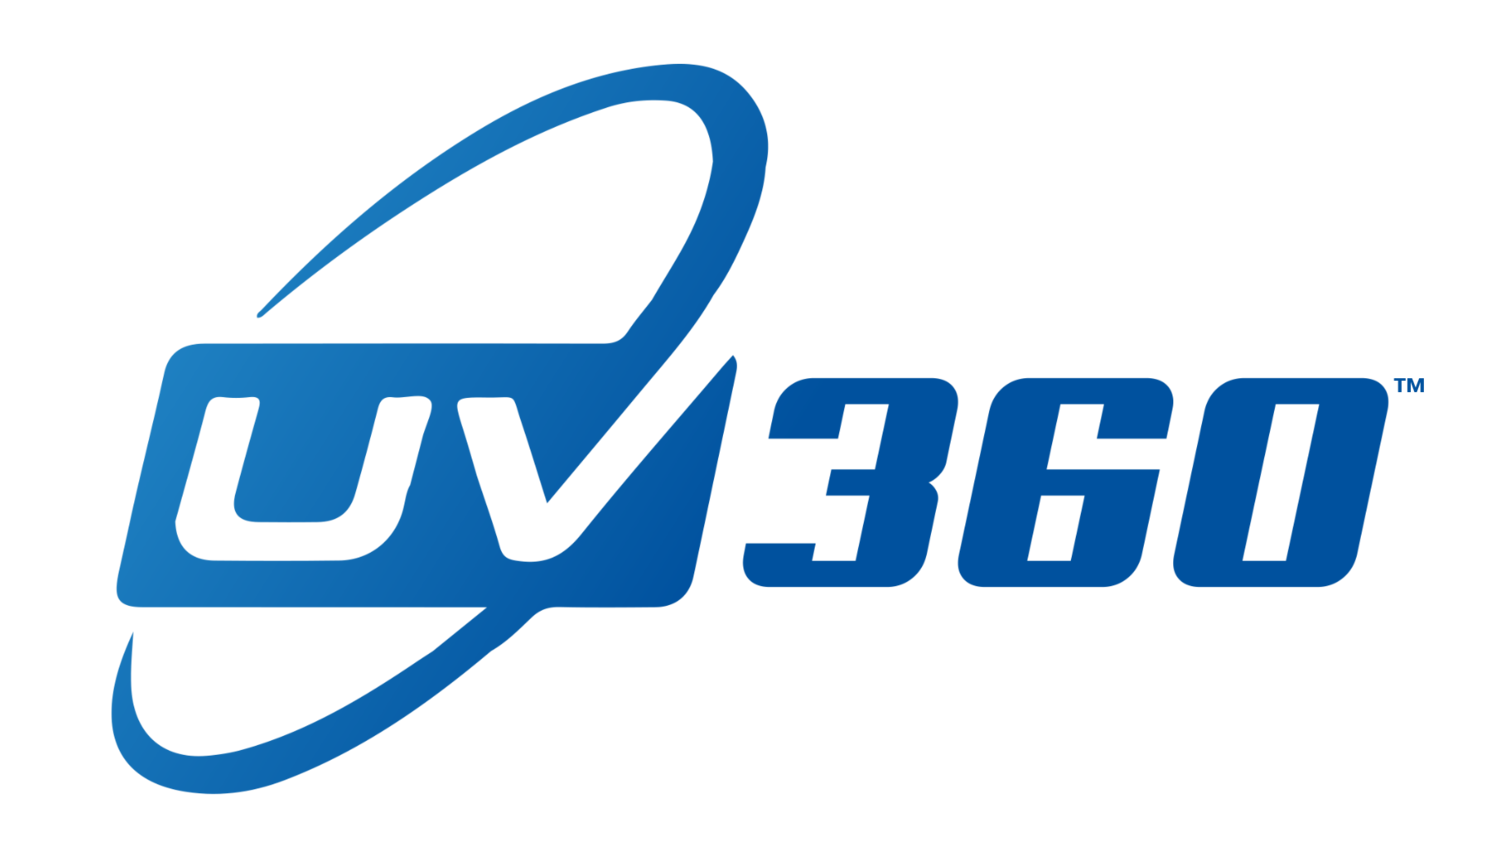 UV360